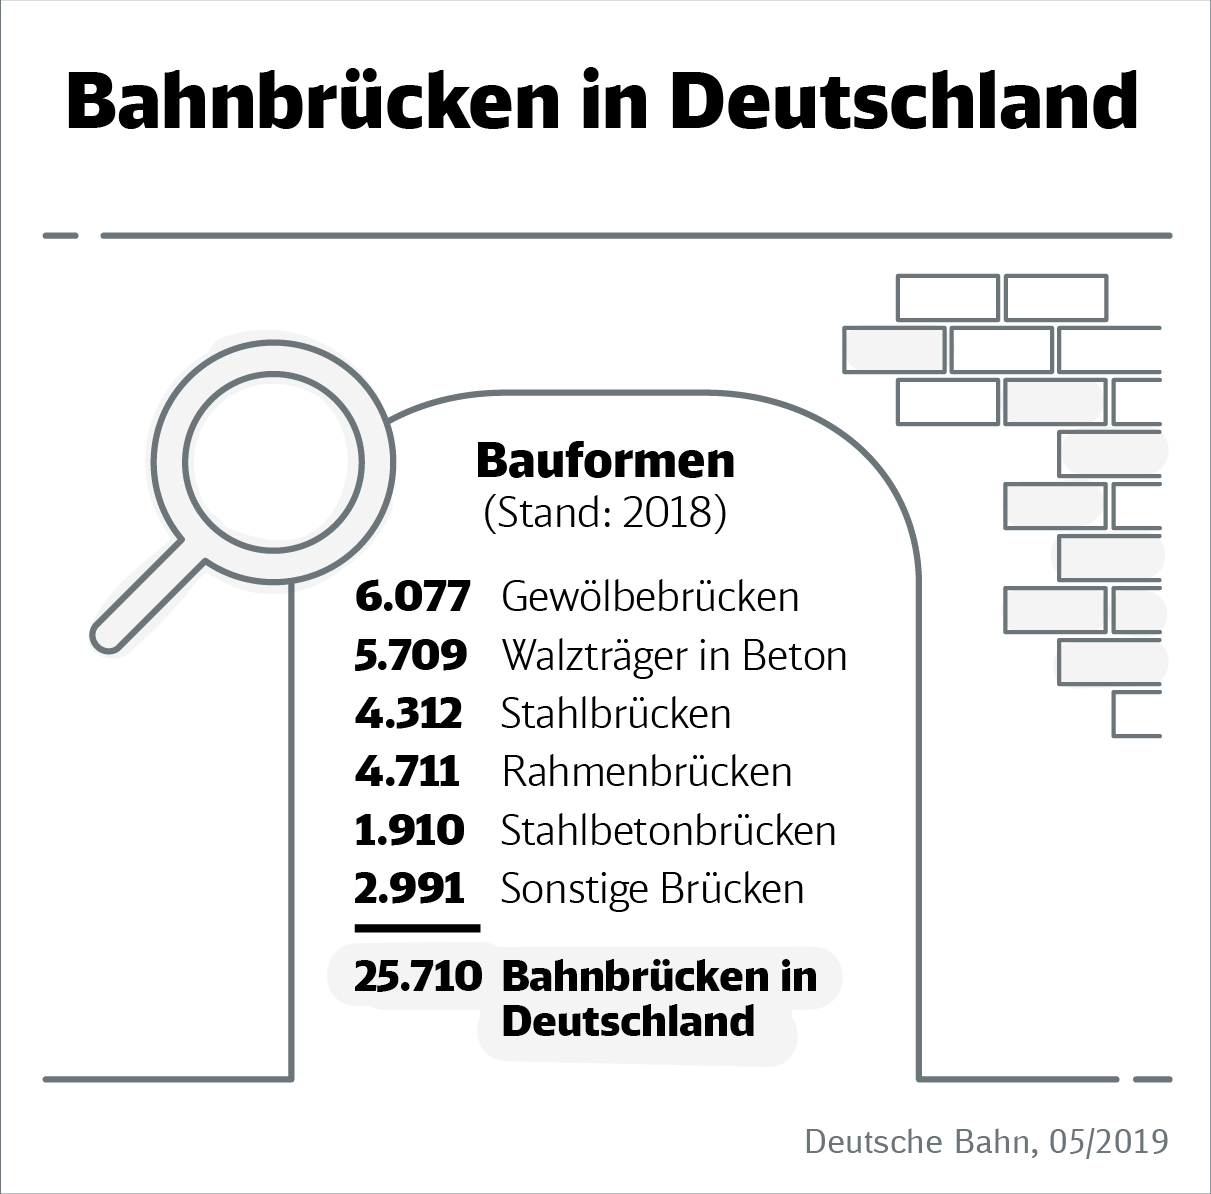 DB Infografik: Bahnbrücken in Deutschland - Durchschnittsalter und Bauformen